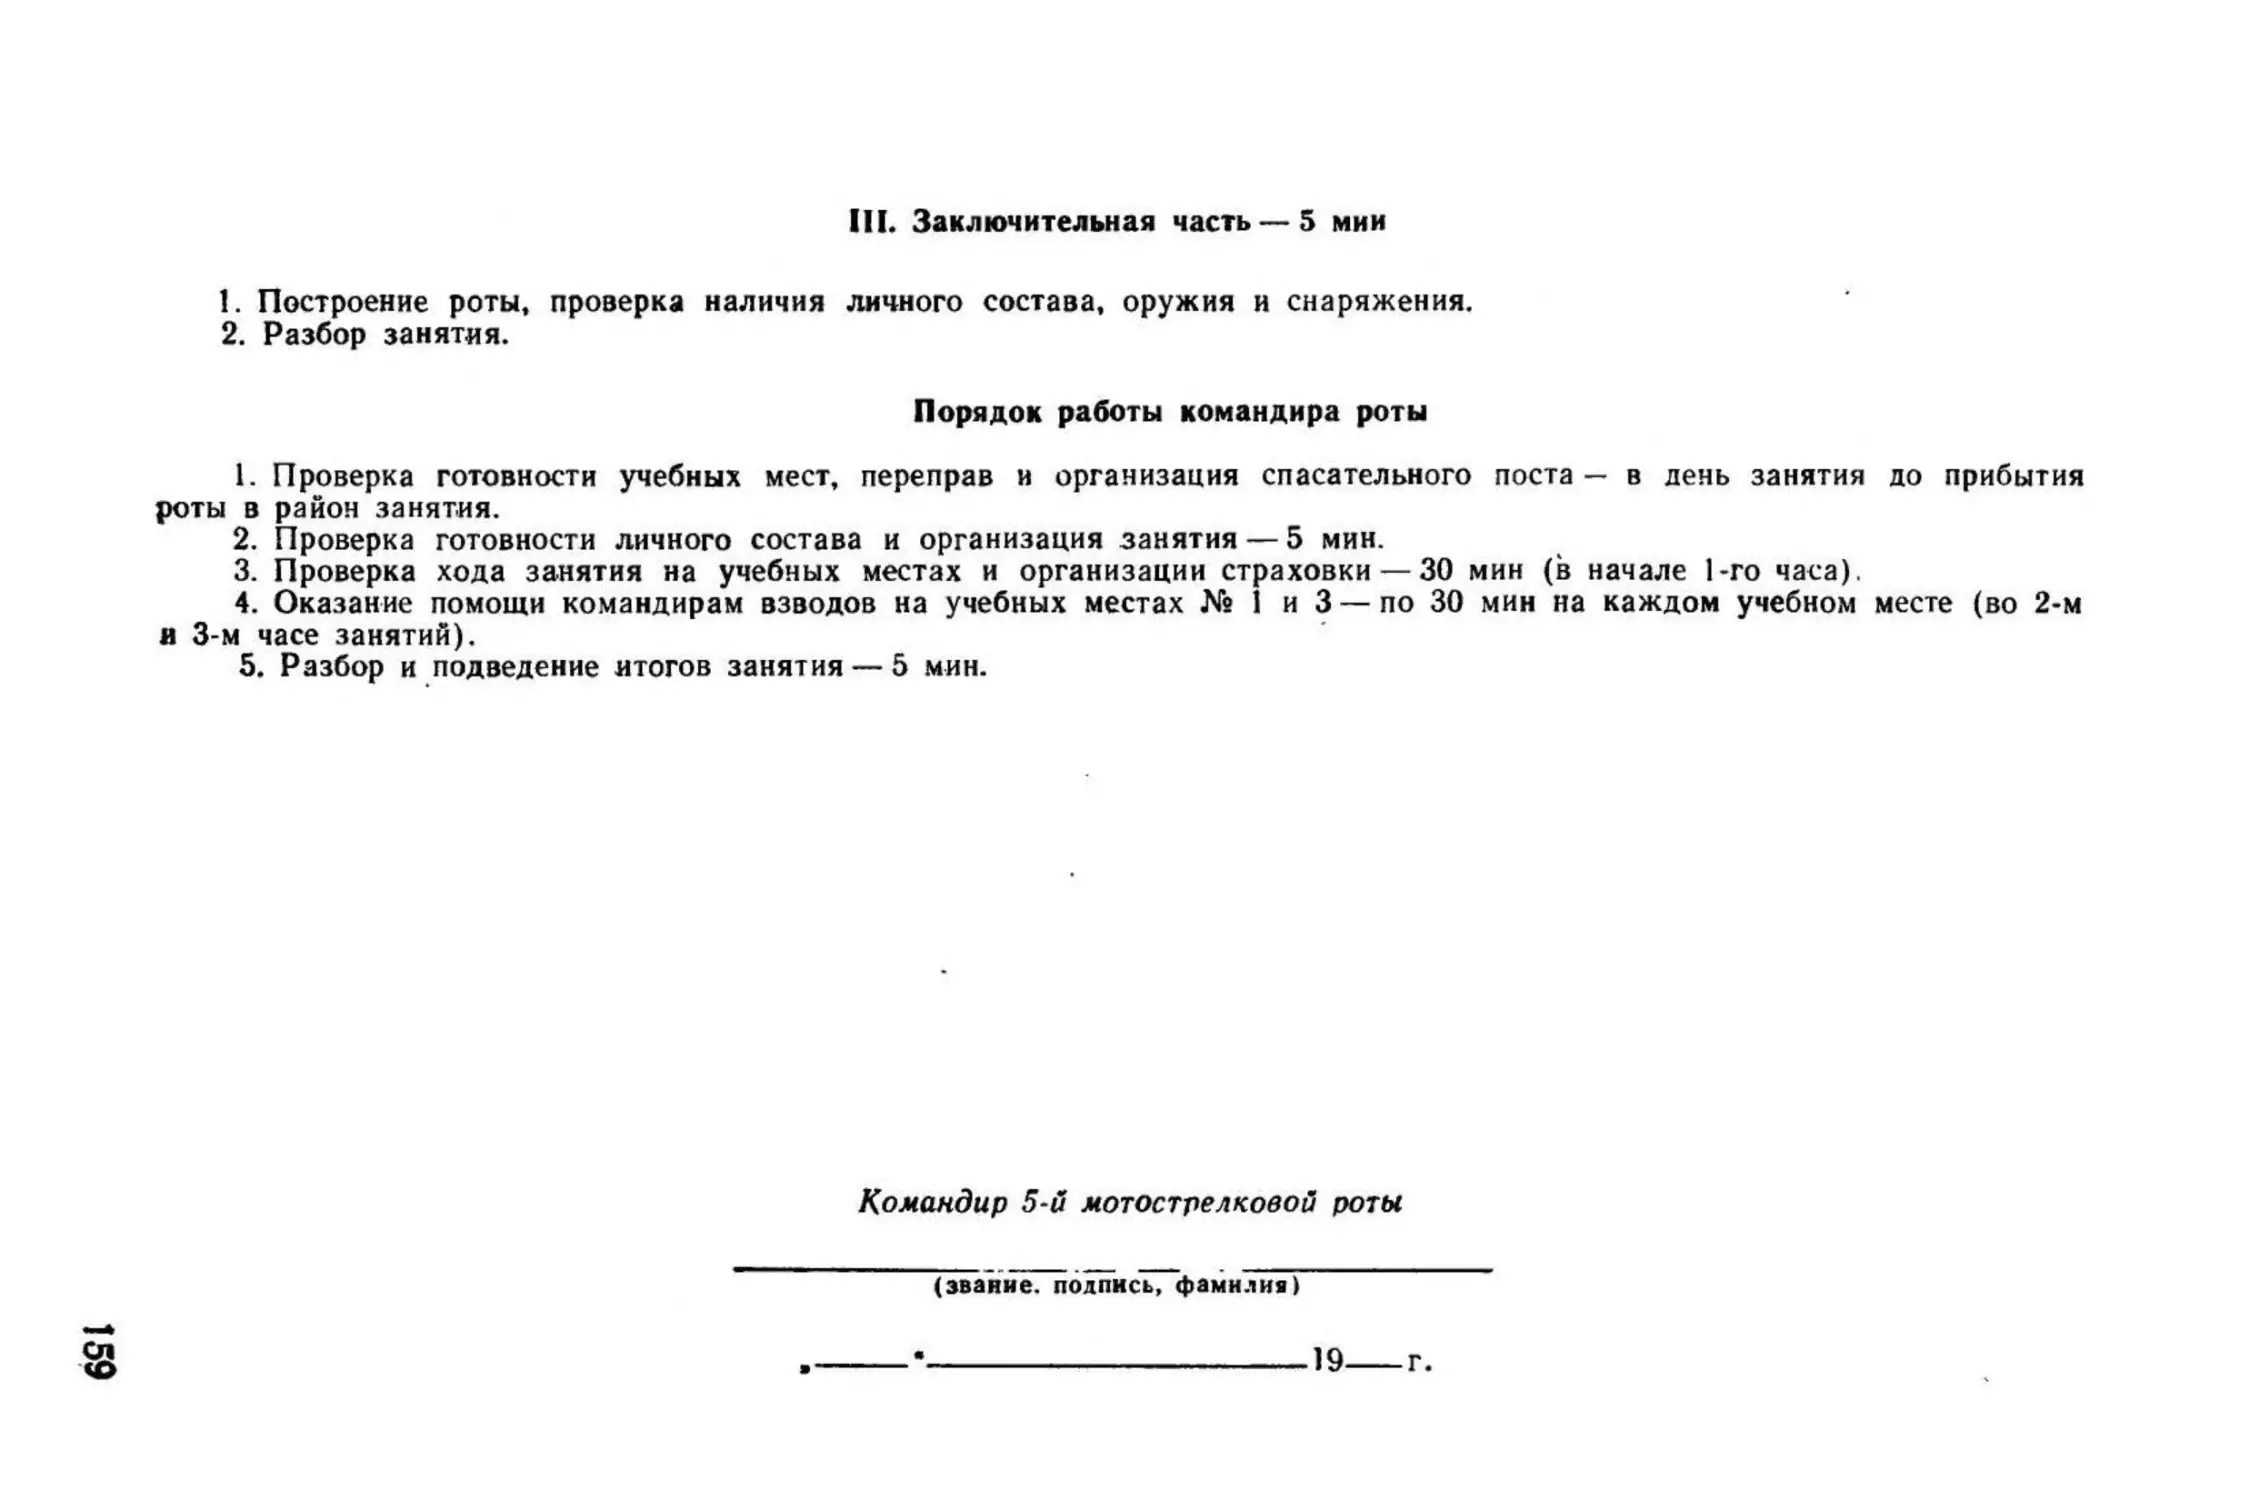 Методическое пособие Обучение мотострелковых подразделений боевым действиям в горах (1979)_160